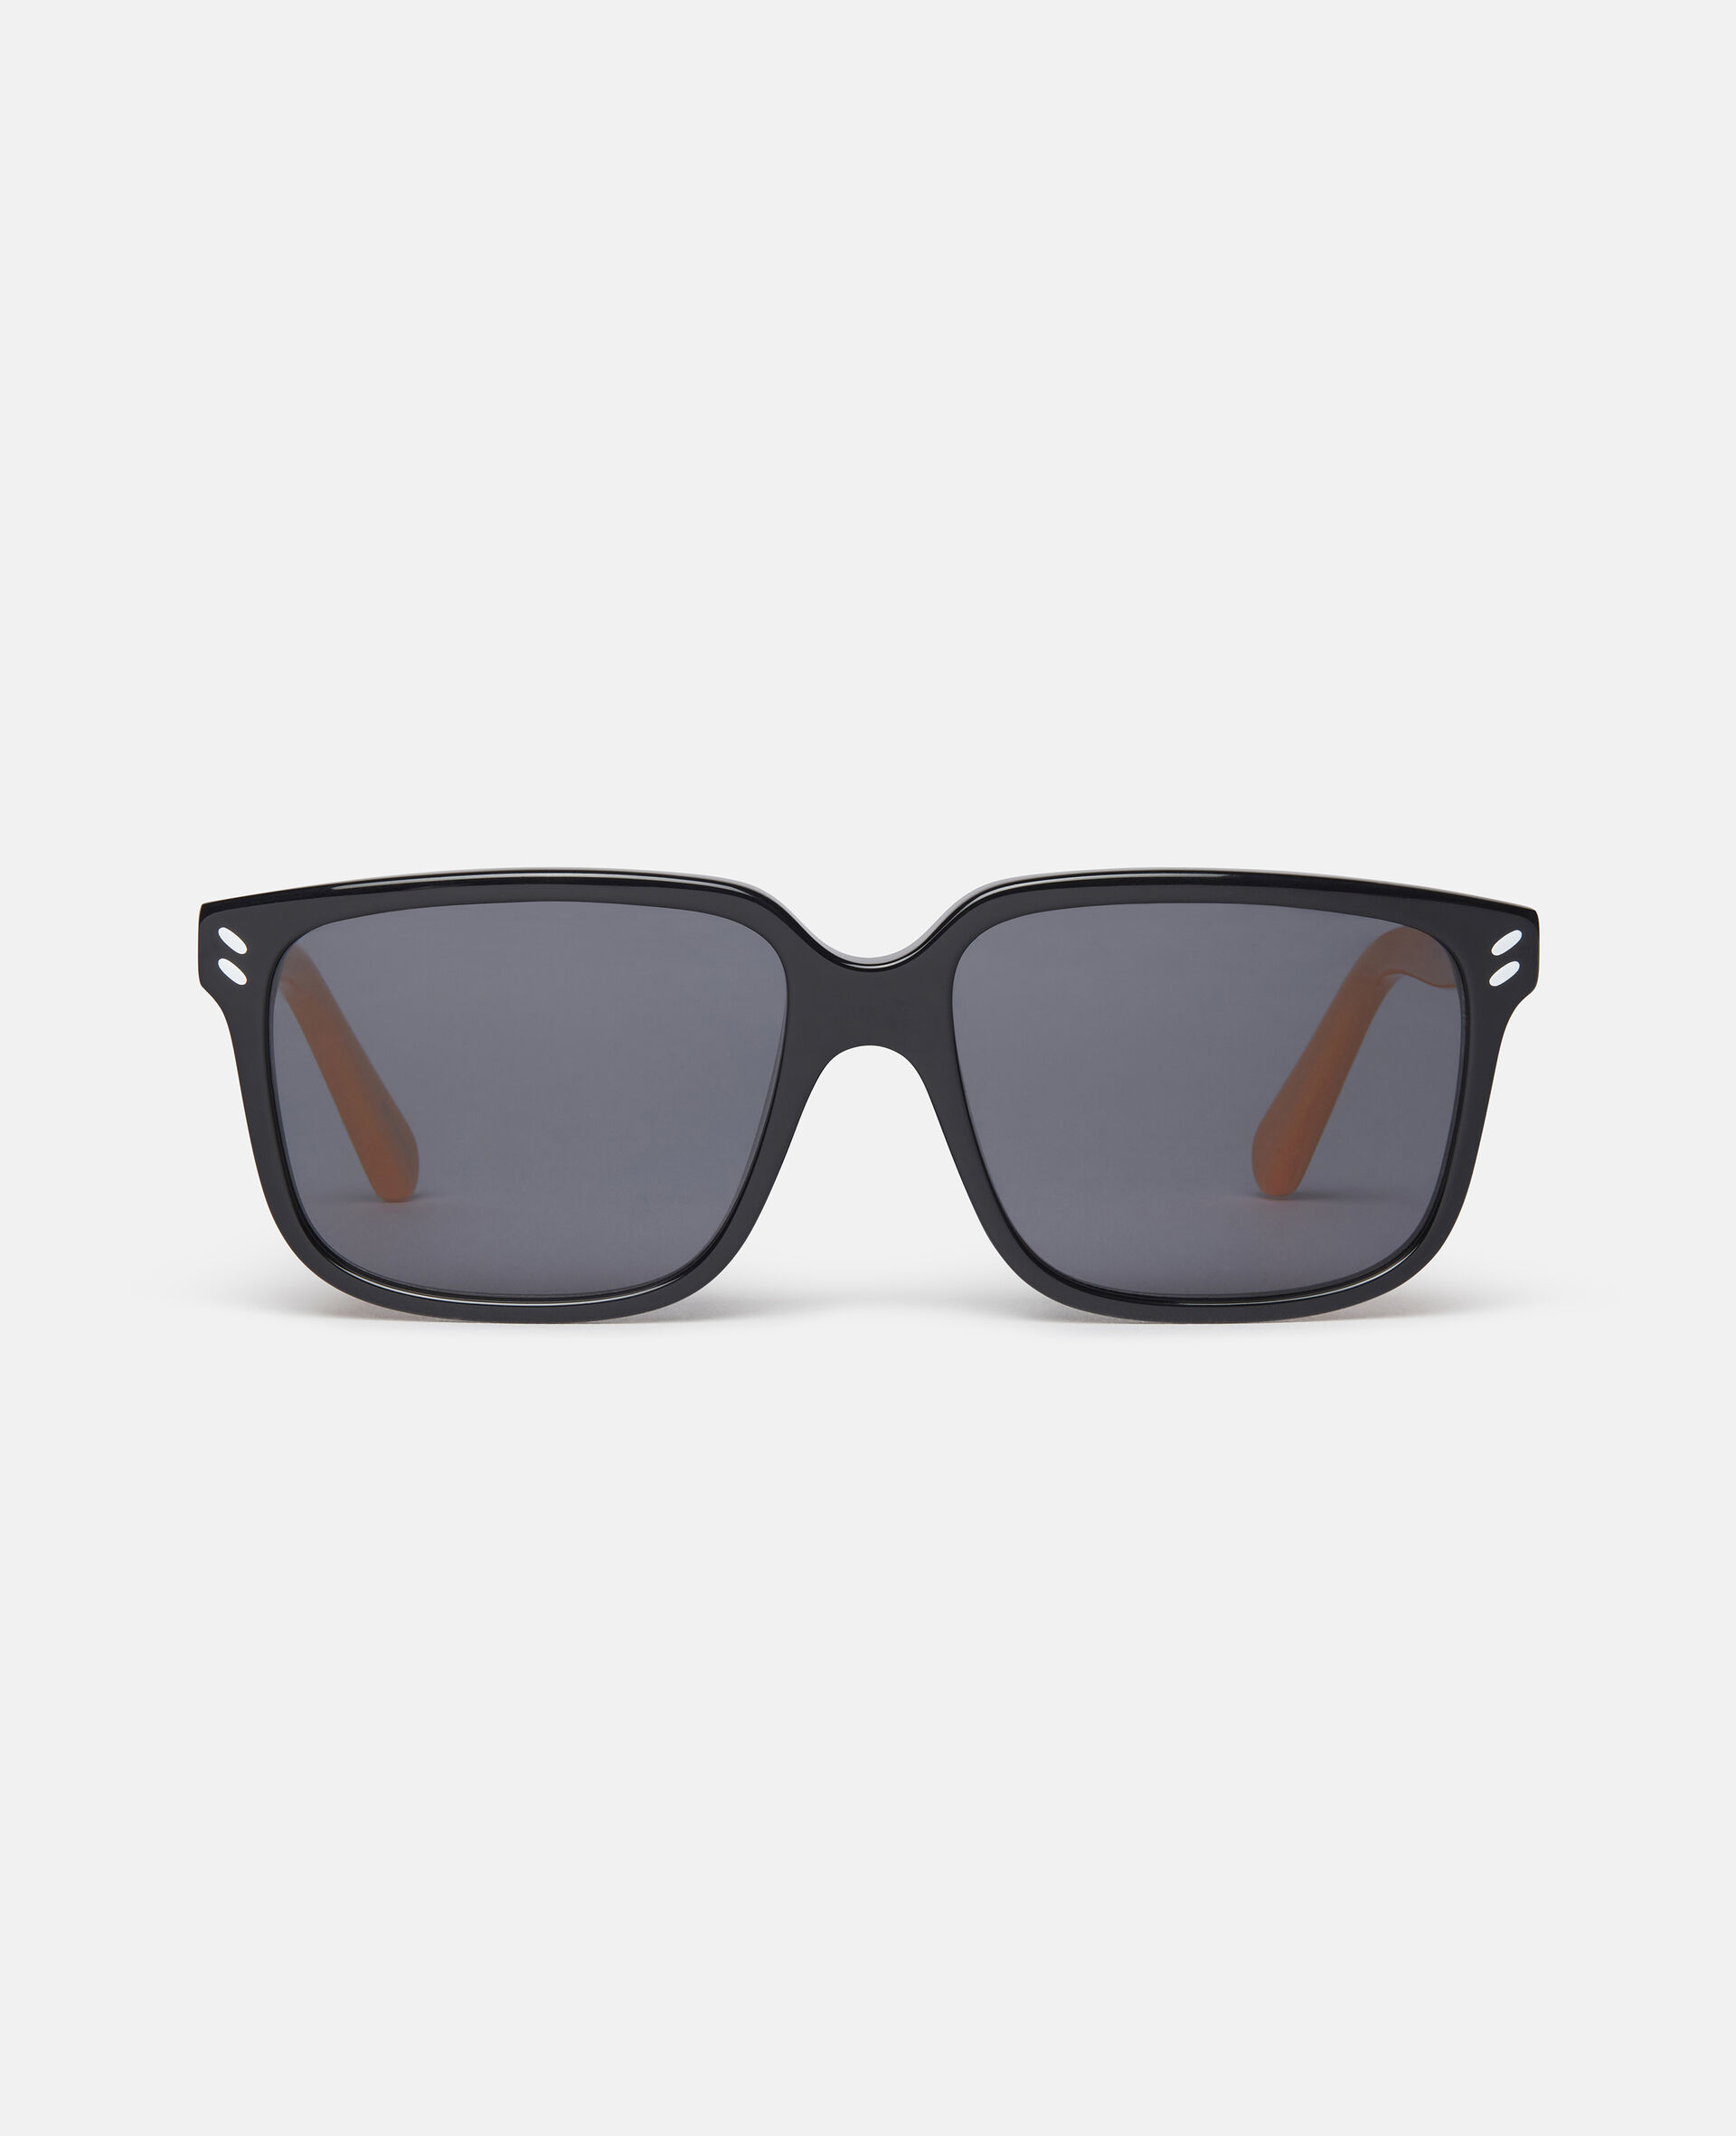 Geometric Sunglasses-Black-large image number 0